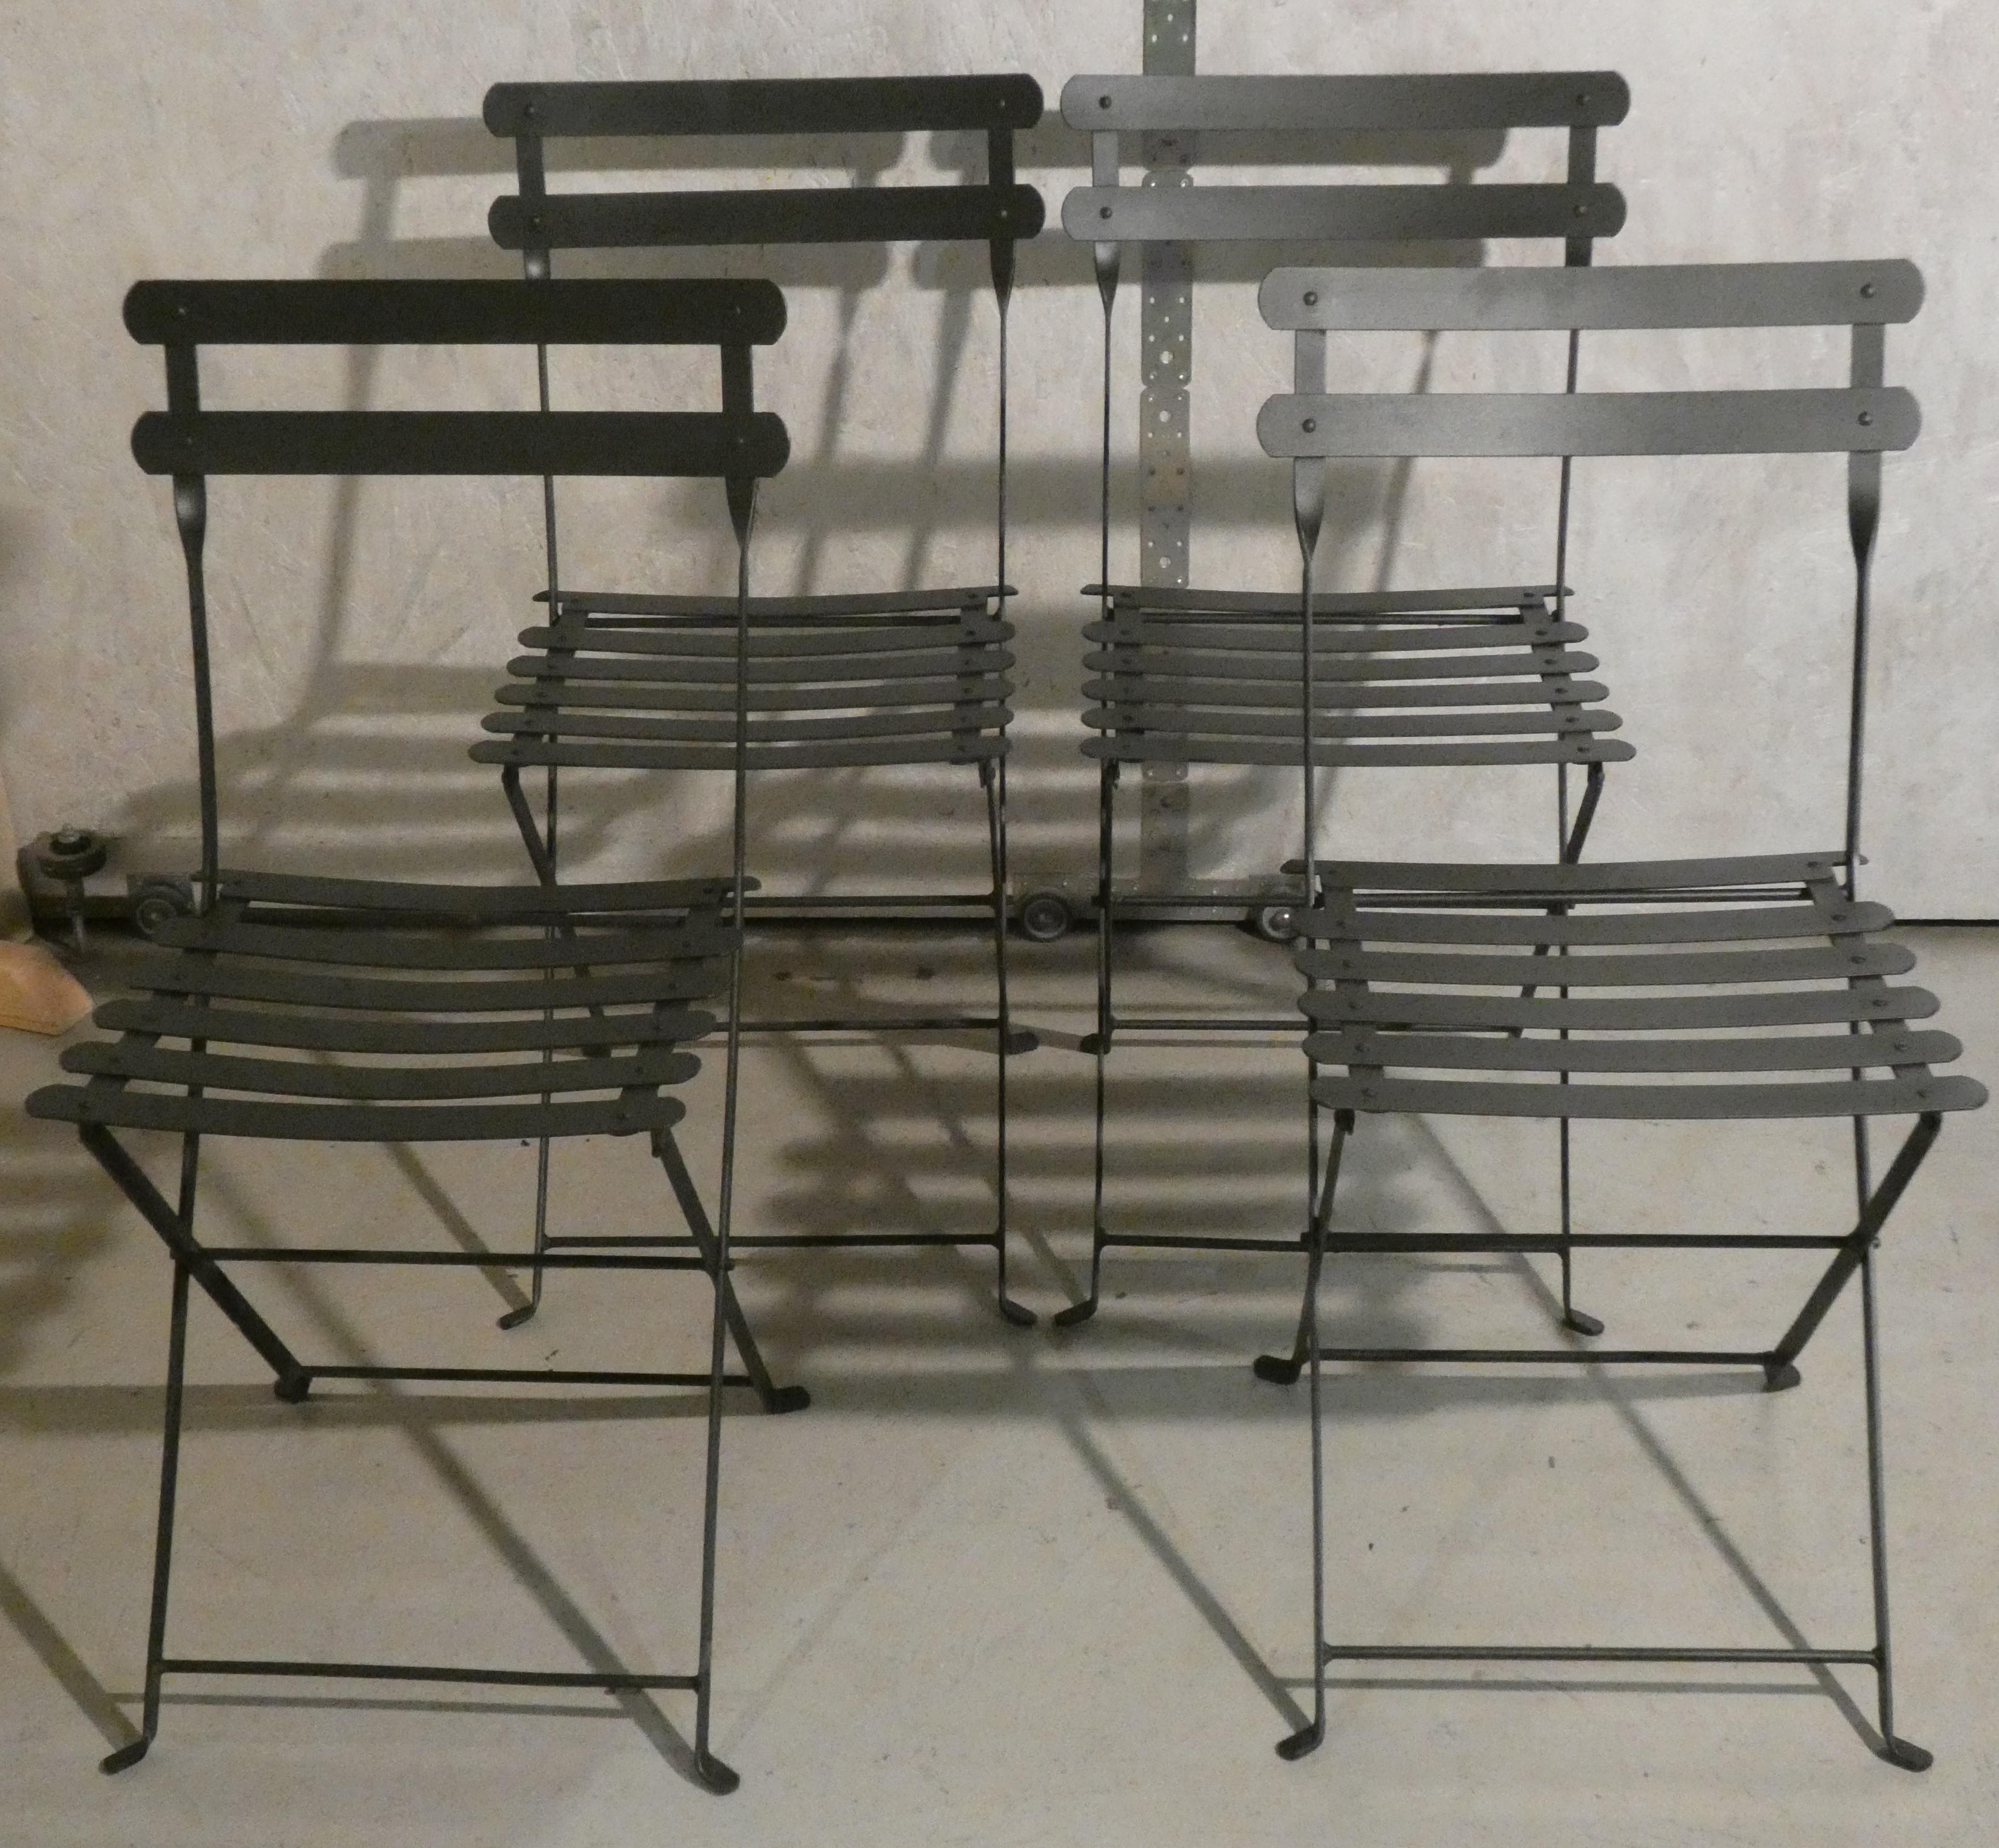 Set composto da 4 sedie Celestina, le iconiche sedie pieghevoli prodotte da Zanotta dal 1978. Qui proposte nella versione in Acciaio verniciato a polvere, in color grigio antracite, con finitura in ferromicaceo. Le sedie sono perfettamente integre